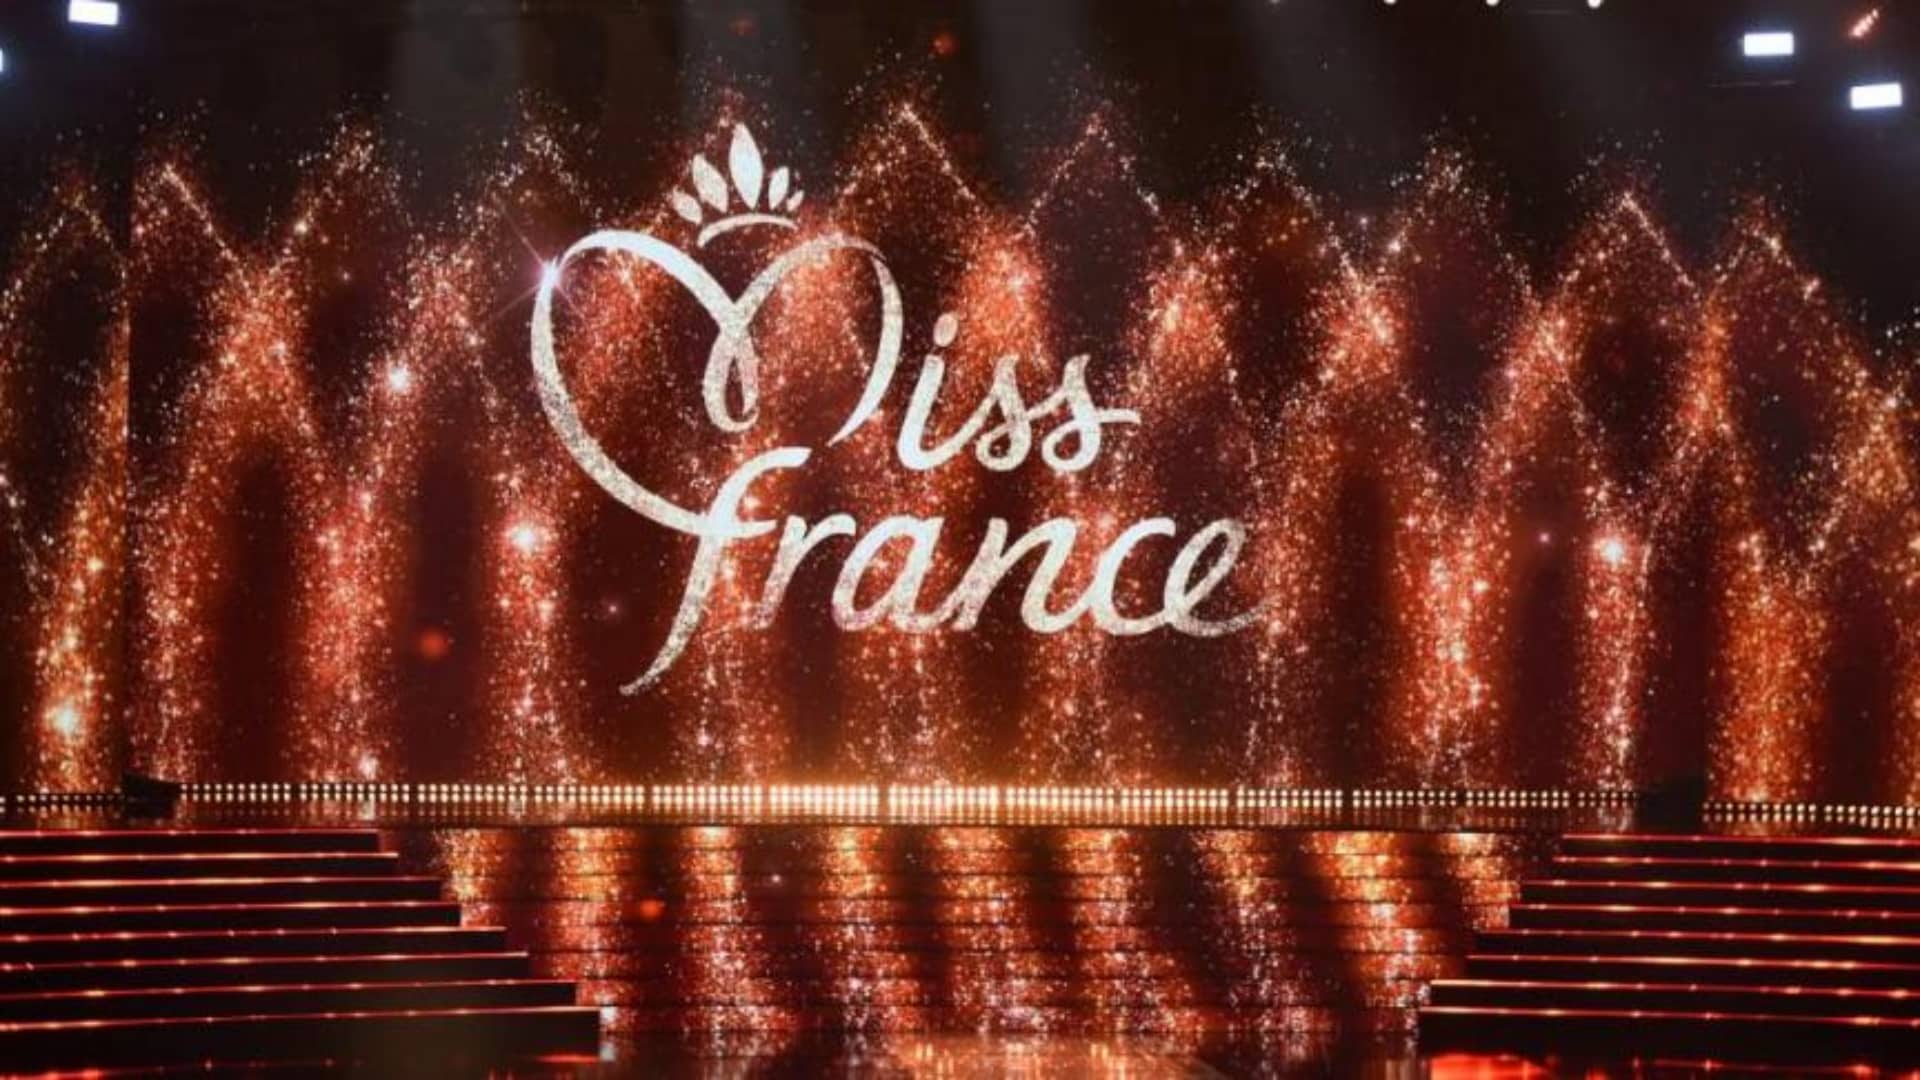 Miss France 2024 : voici les trois Miss les plus populaires sur les réseaux sociaux